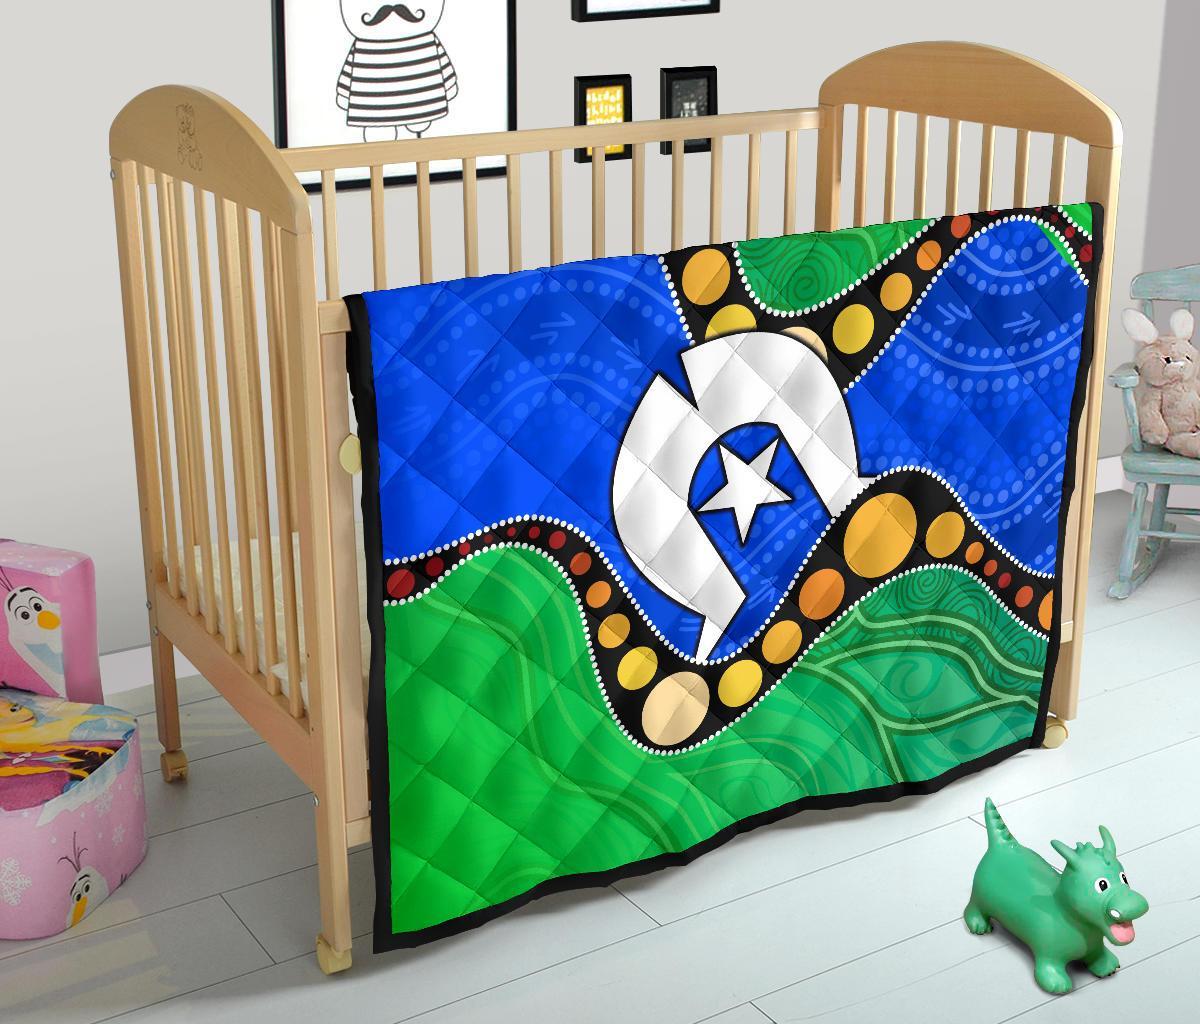 Torres Strait Islands Premium Quilt - Flag with Aboriginal Patterns